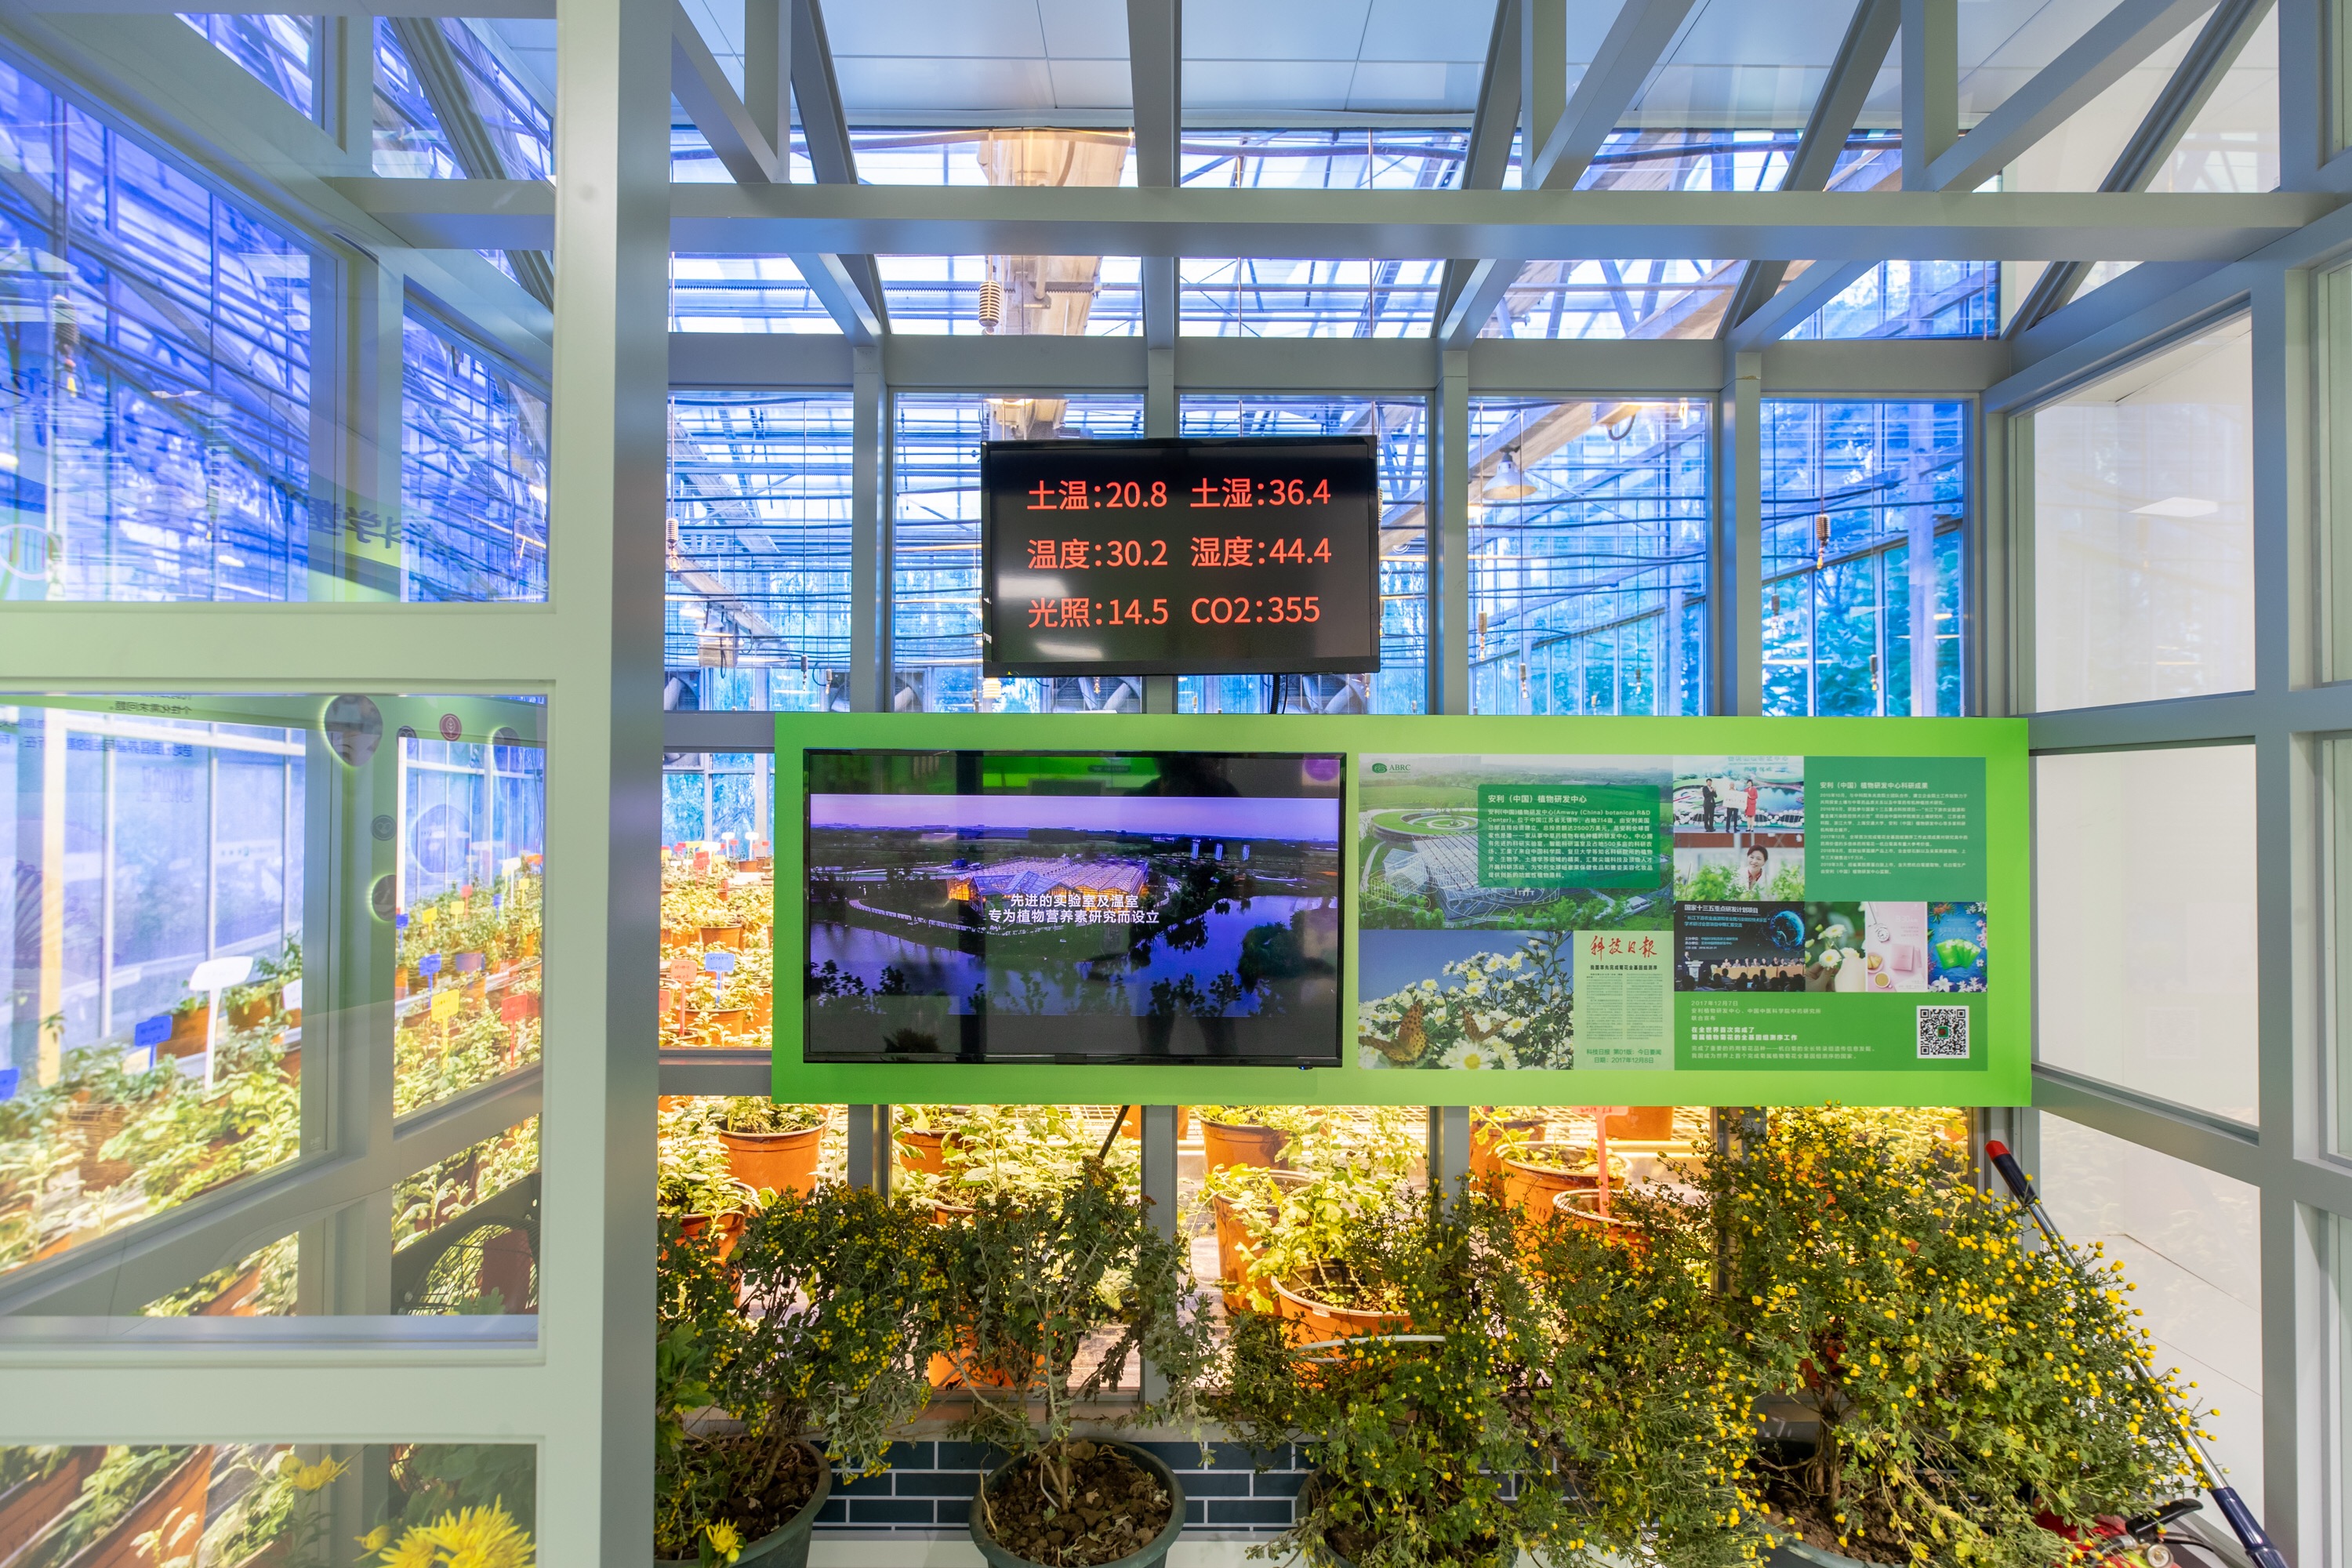 第二届进博会安利展区内还原了安利植物研发中心科研温室2019年,为